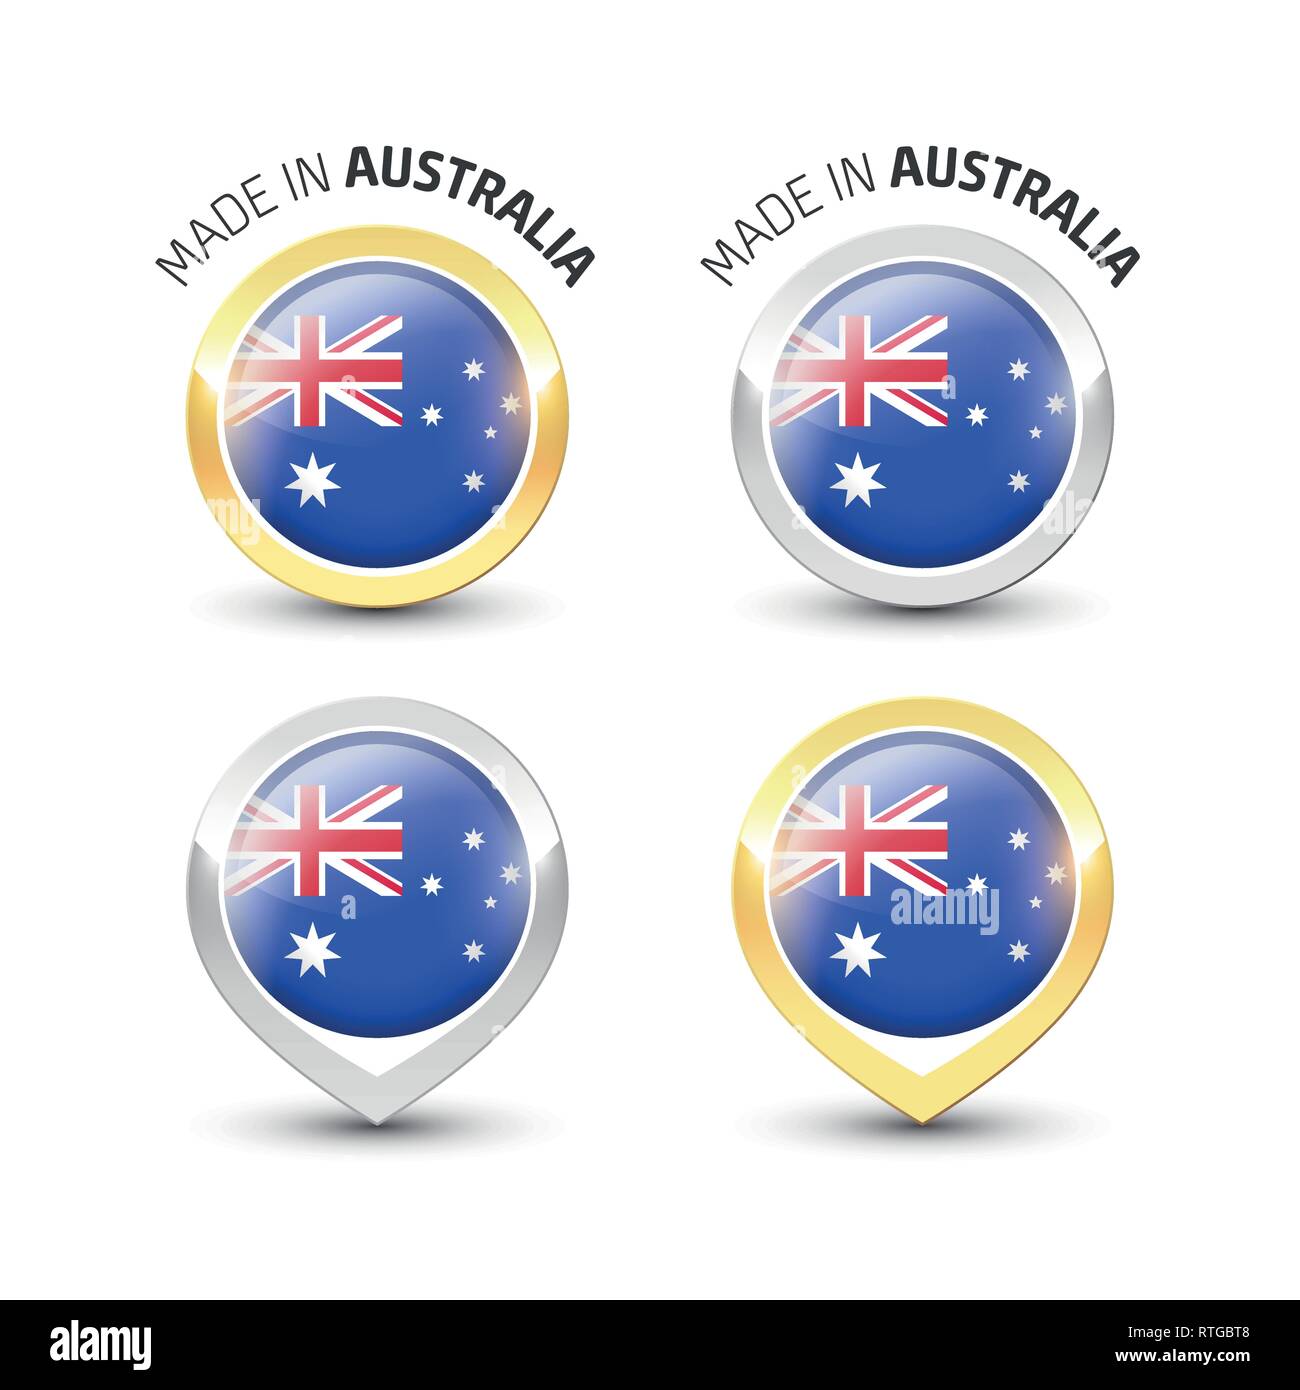 Realizzato in Australia - etichetta di garanzia con la bandiera australiana all'interno del turno oro e argento icone. Illustrazione Vettoriale